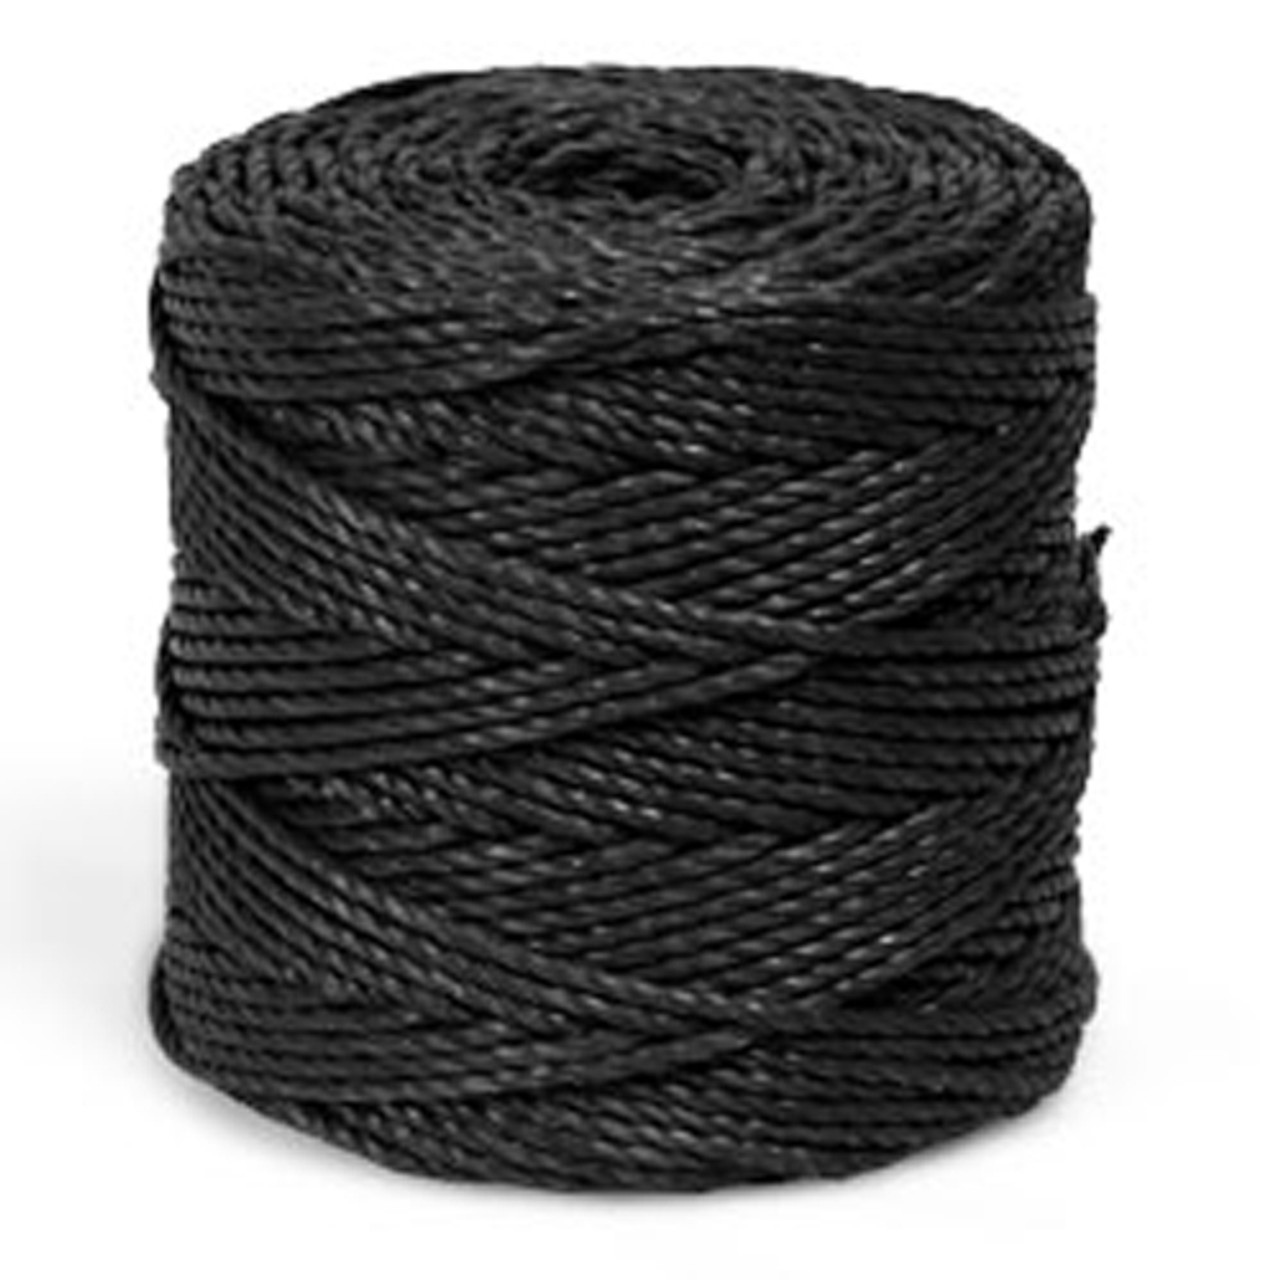 Tree Rope Twine - Black, 7600 LF at